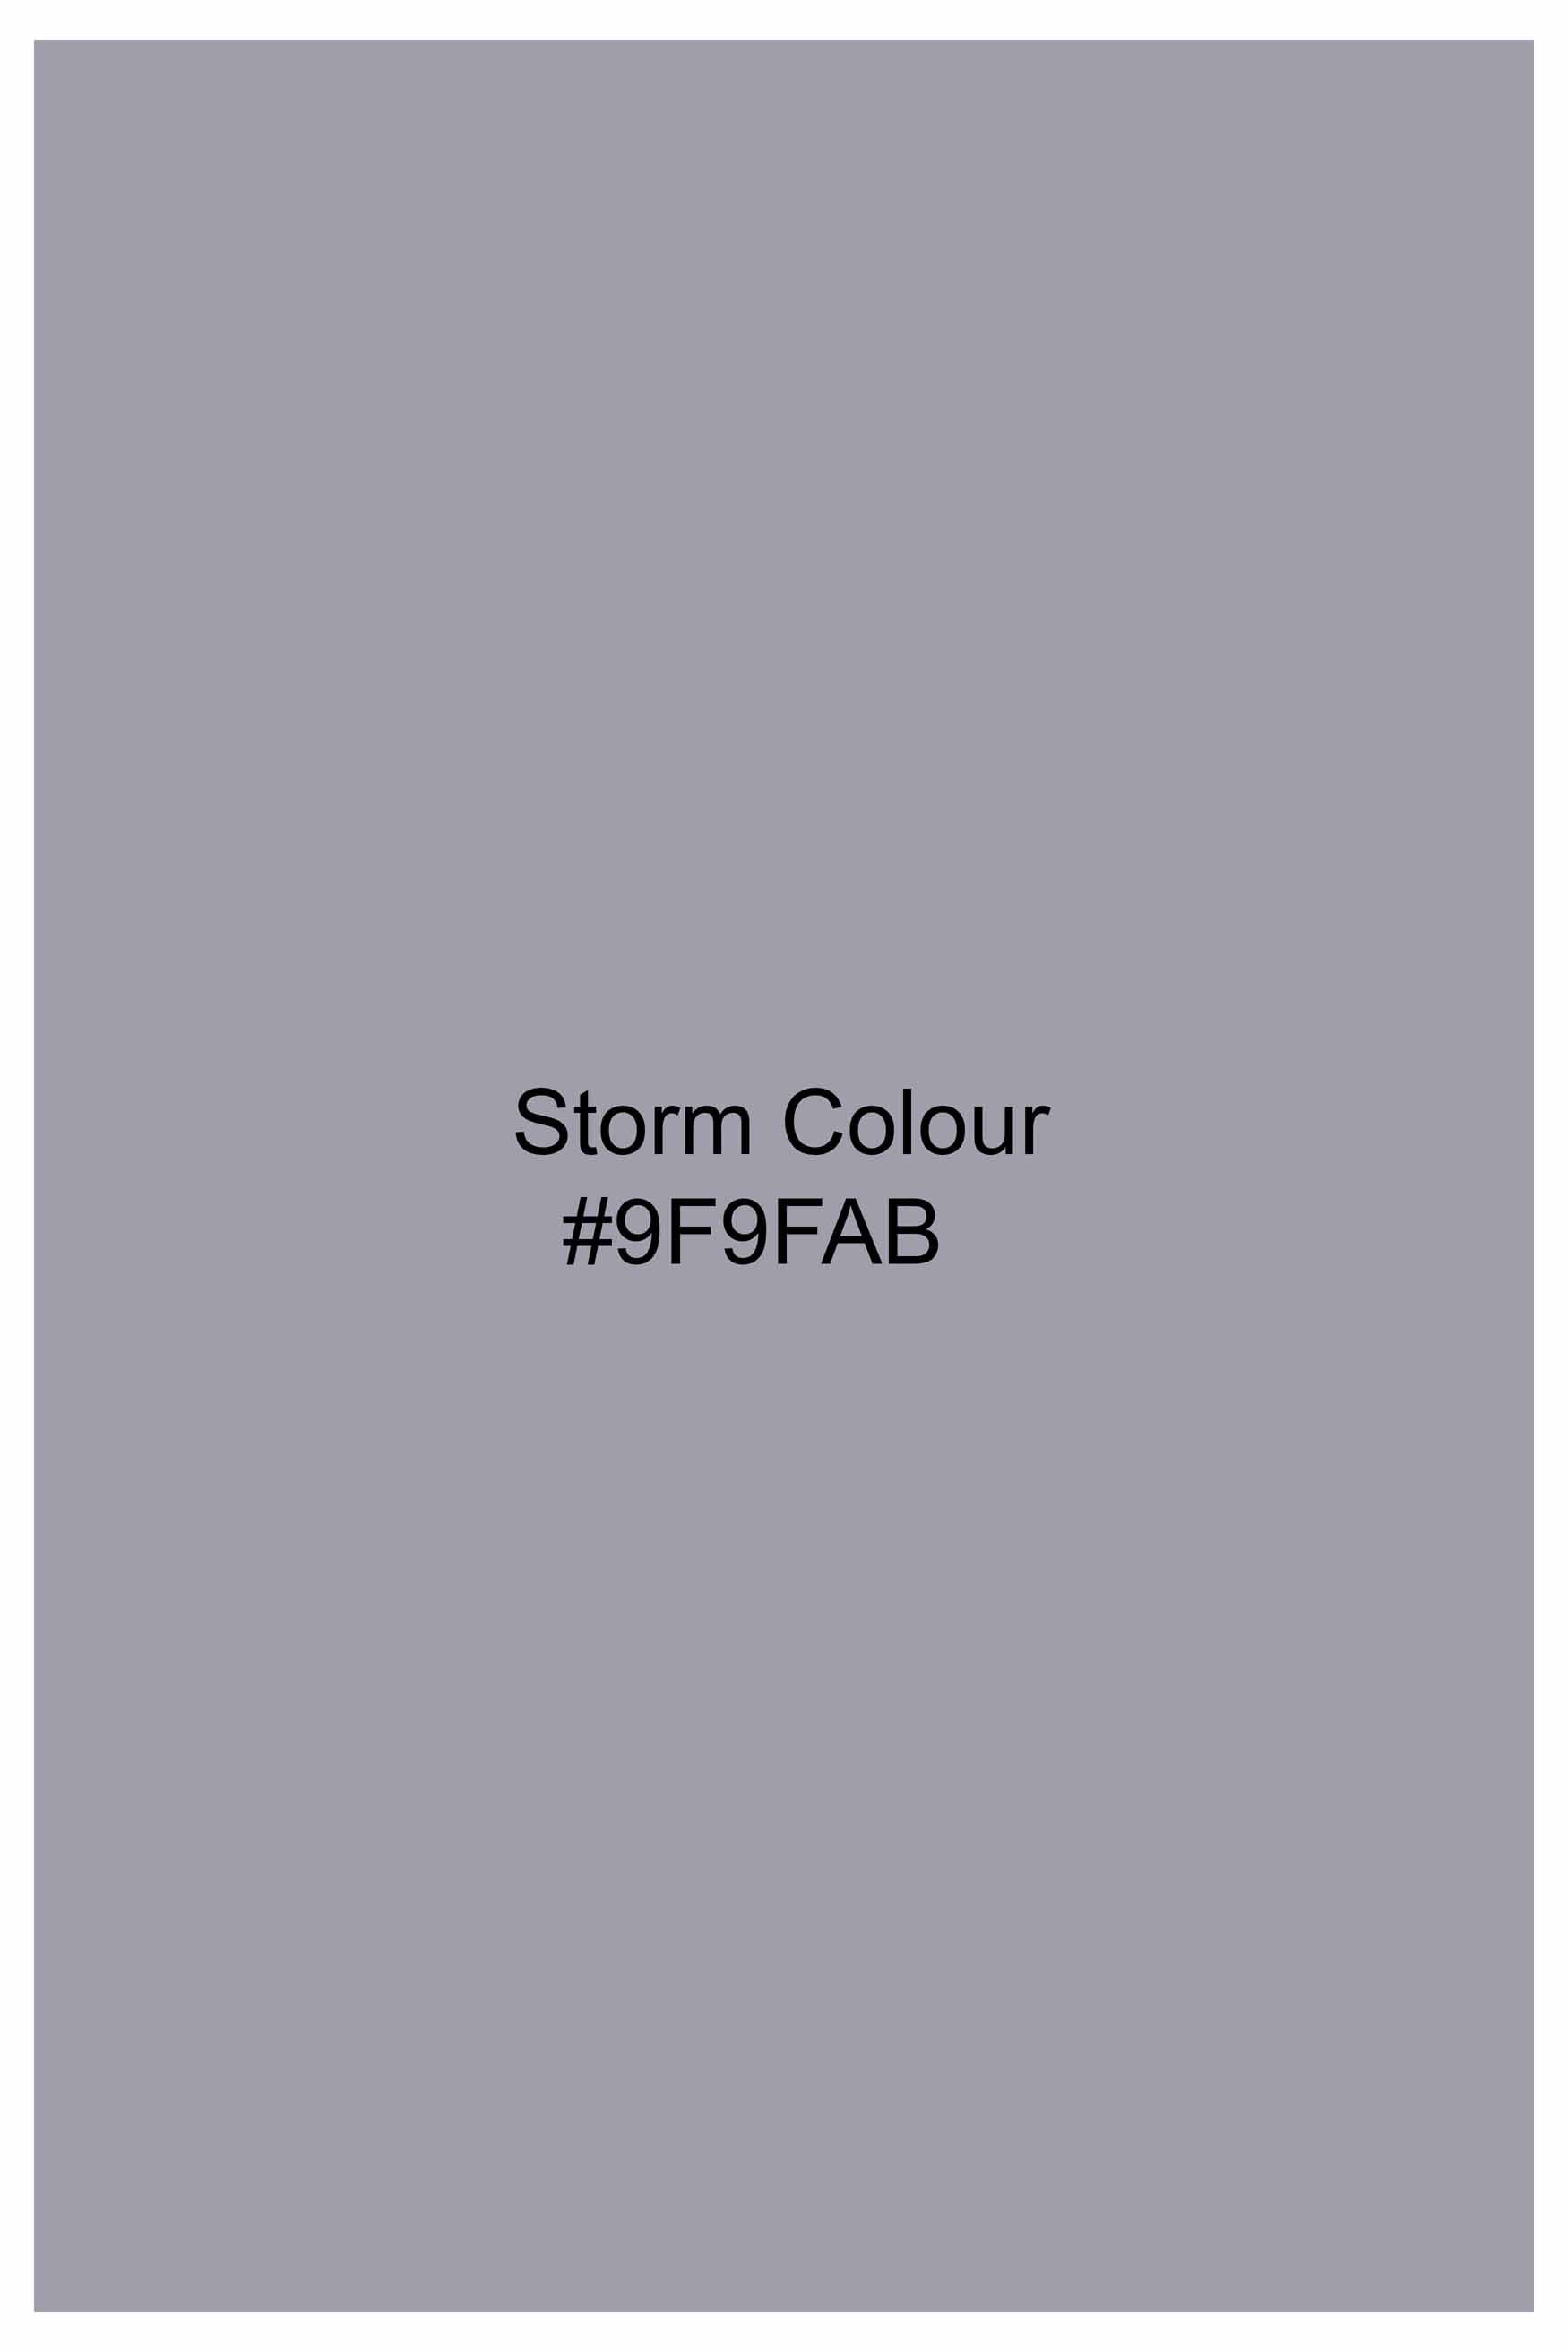 Storm Gray Subtle Sheen Super Soft Premium Cotton Shirt